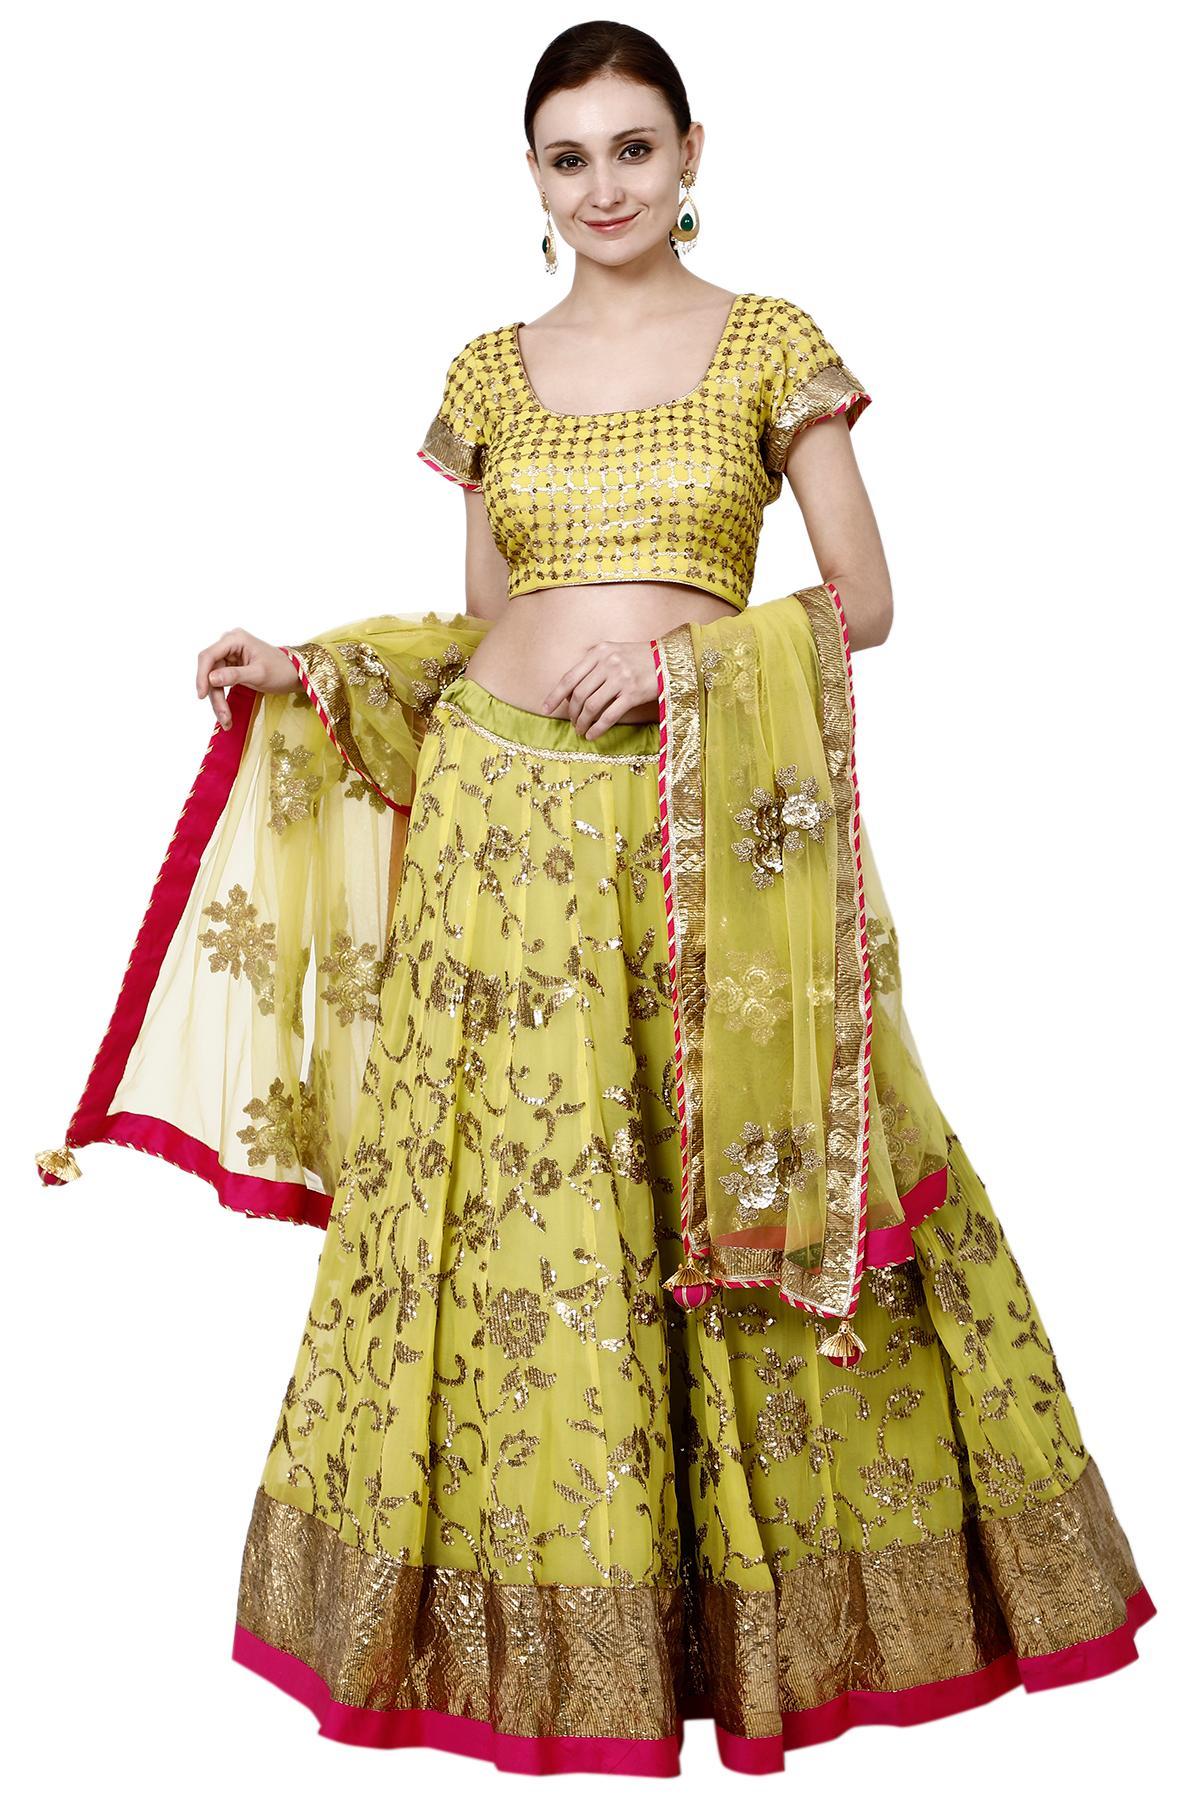 Shop Ethnic Wear for Girls Online | Girls Party wear | Ethnic Wear –  www.liandli.in